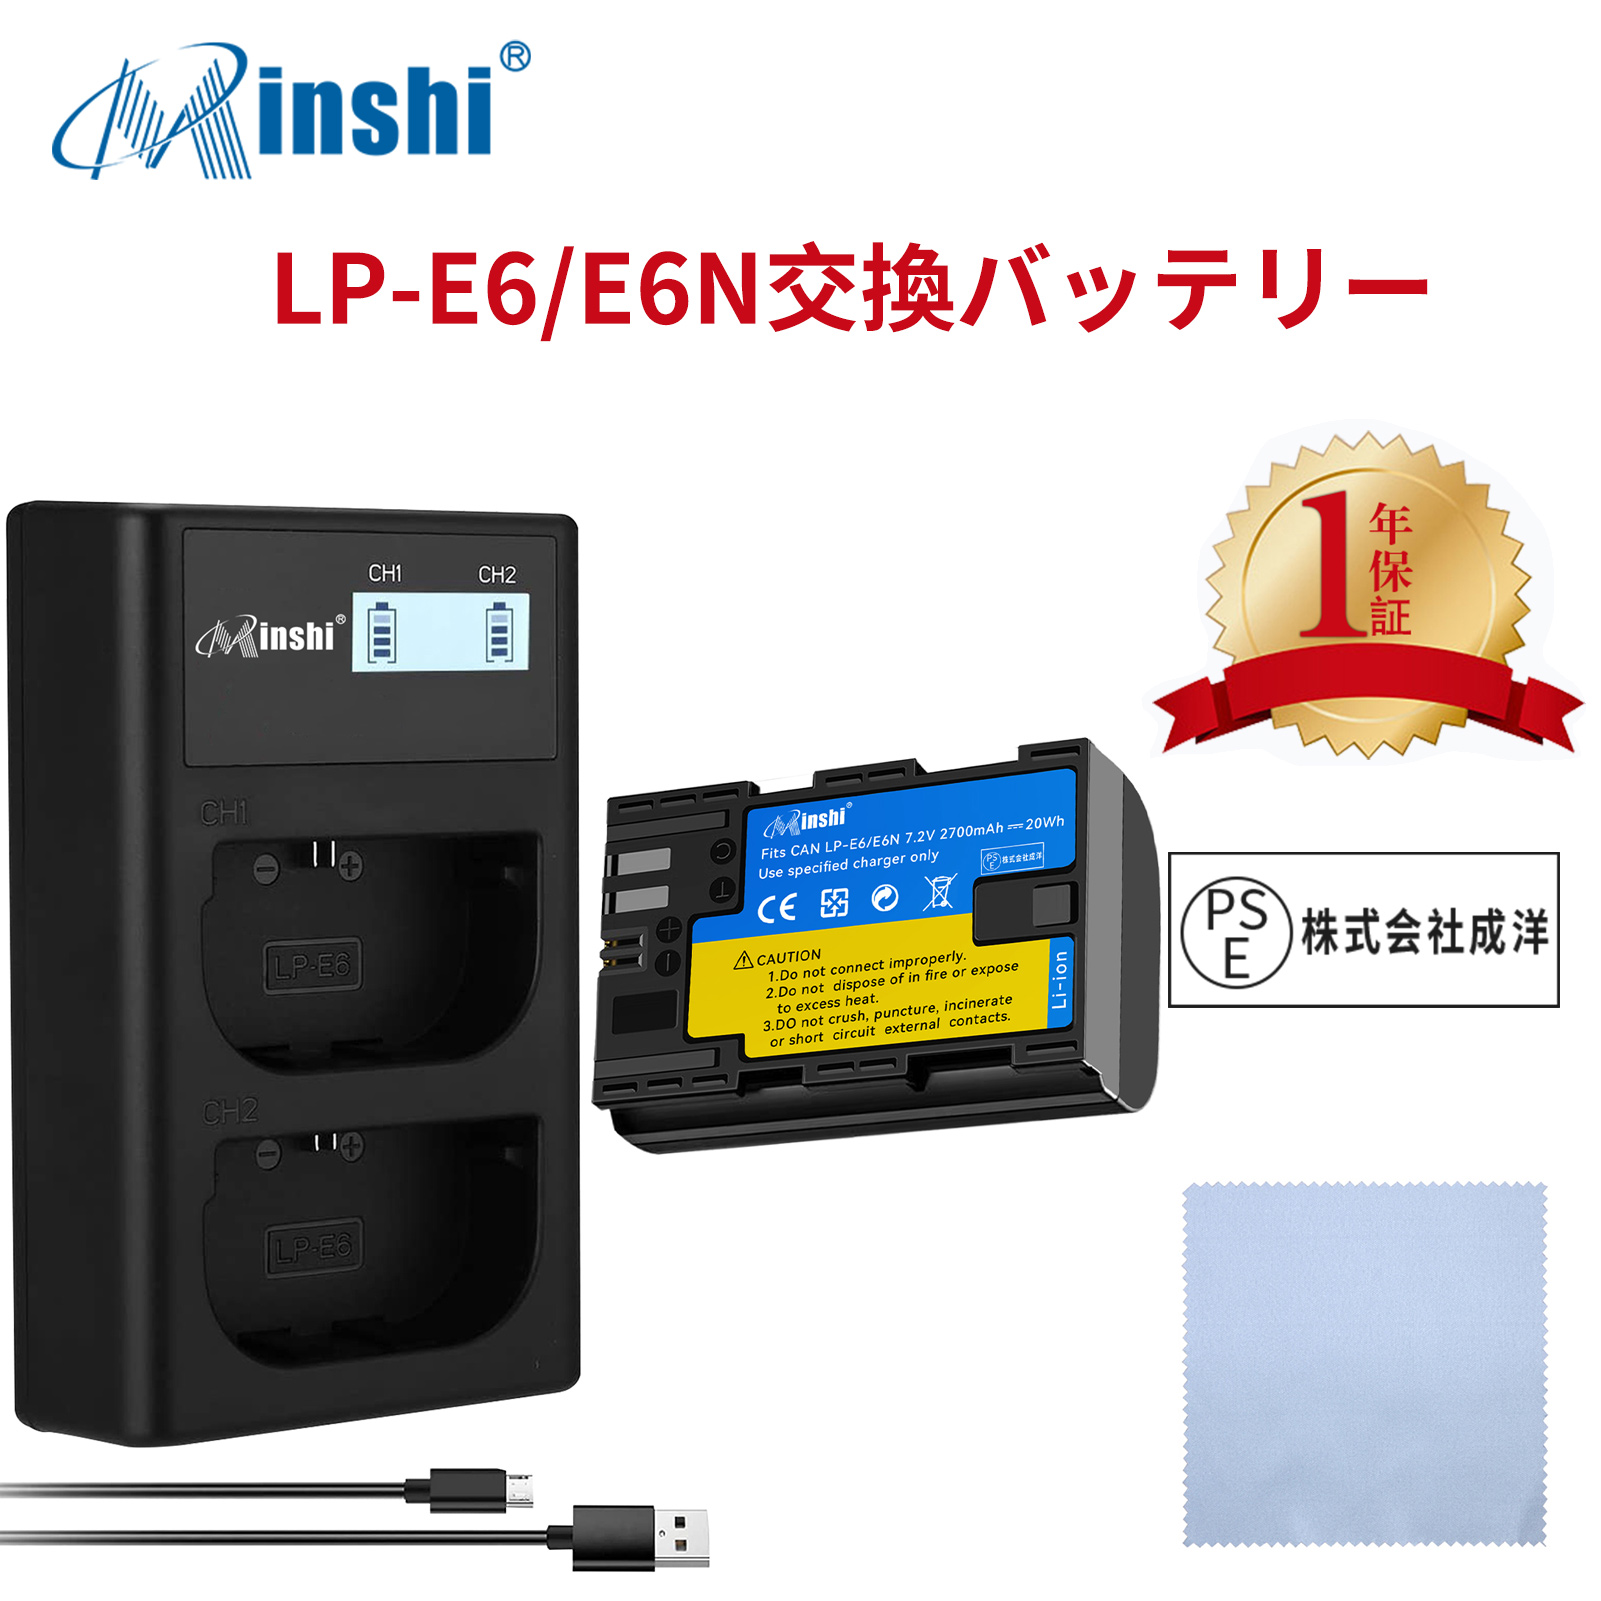 【セット】minshi Canon EOS 80D LP-E6  LP-E6N EOS6D CANON 80D 【2700mAh 7.2V 】高品質 LP-E6NH 交換用バッテリー